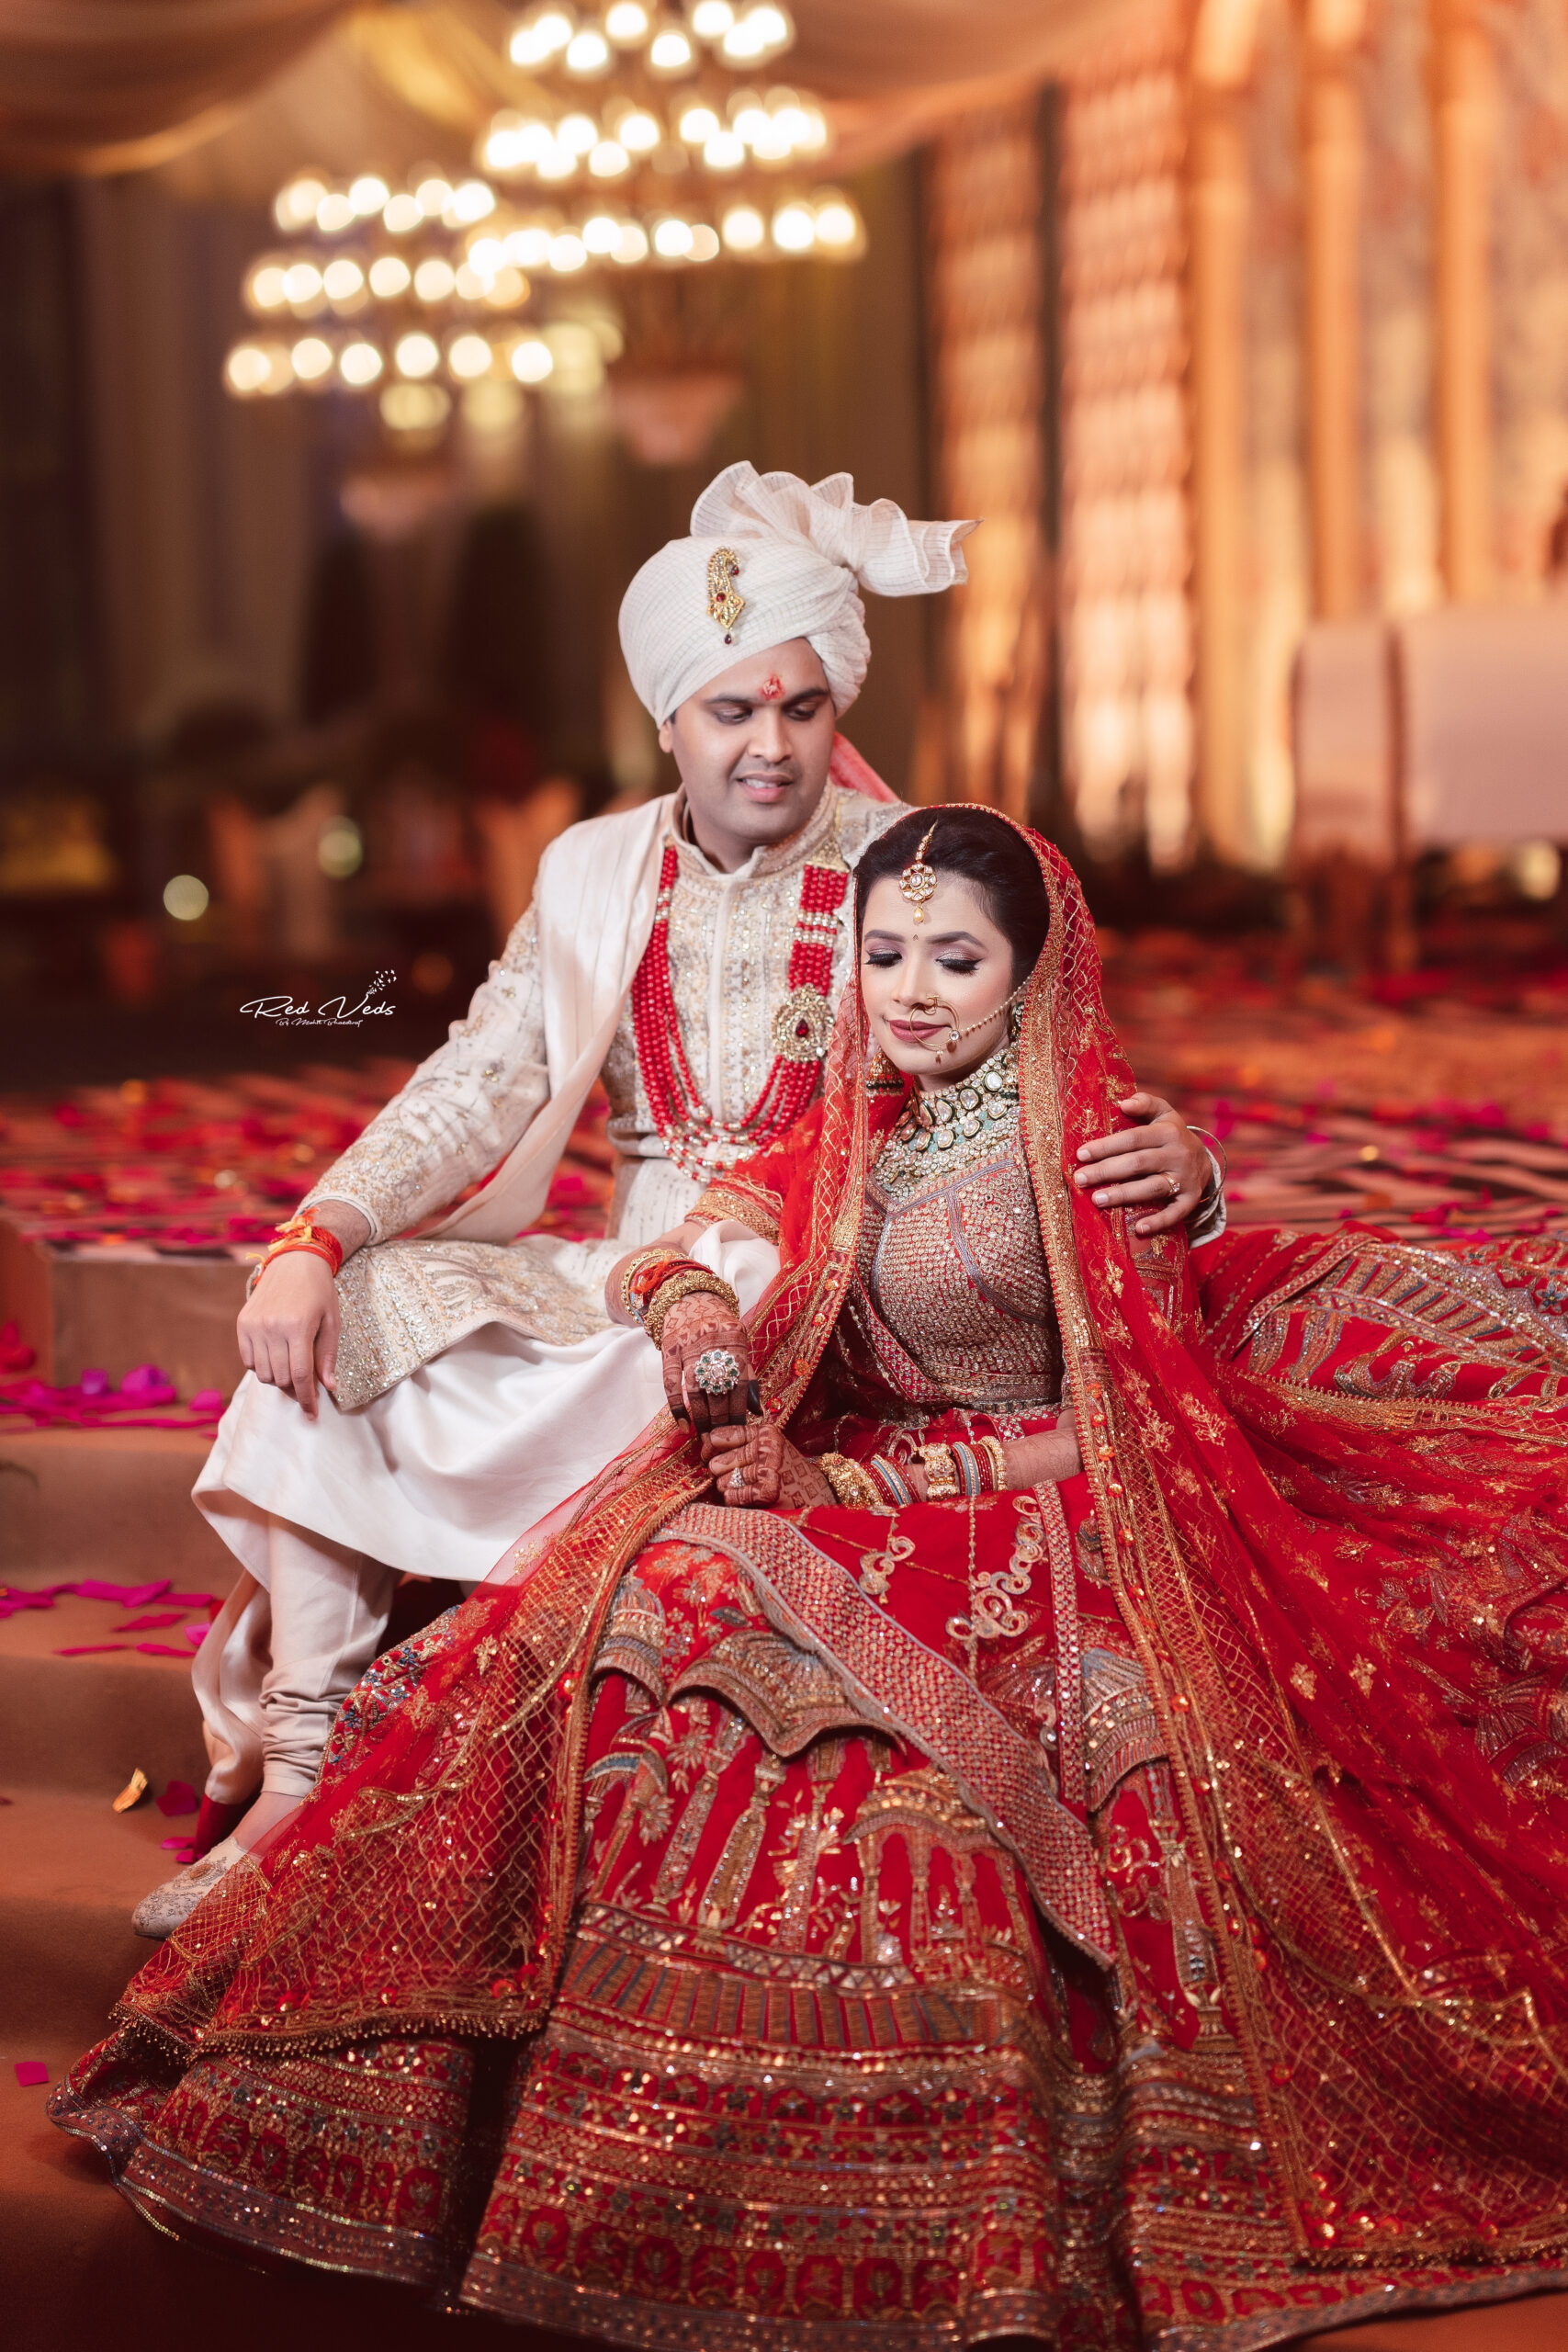 Best couple pose with lehenga and sherwani | Indian bride photography poses,  Couple wedding dress, Wedding couple poses